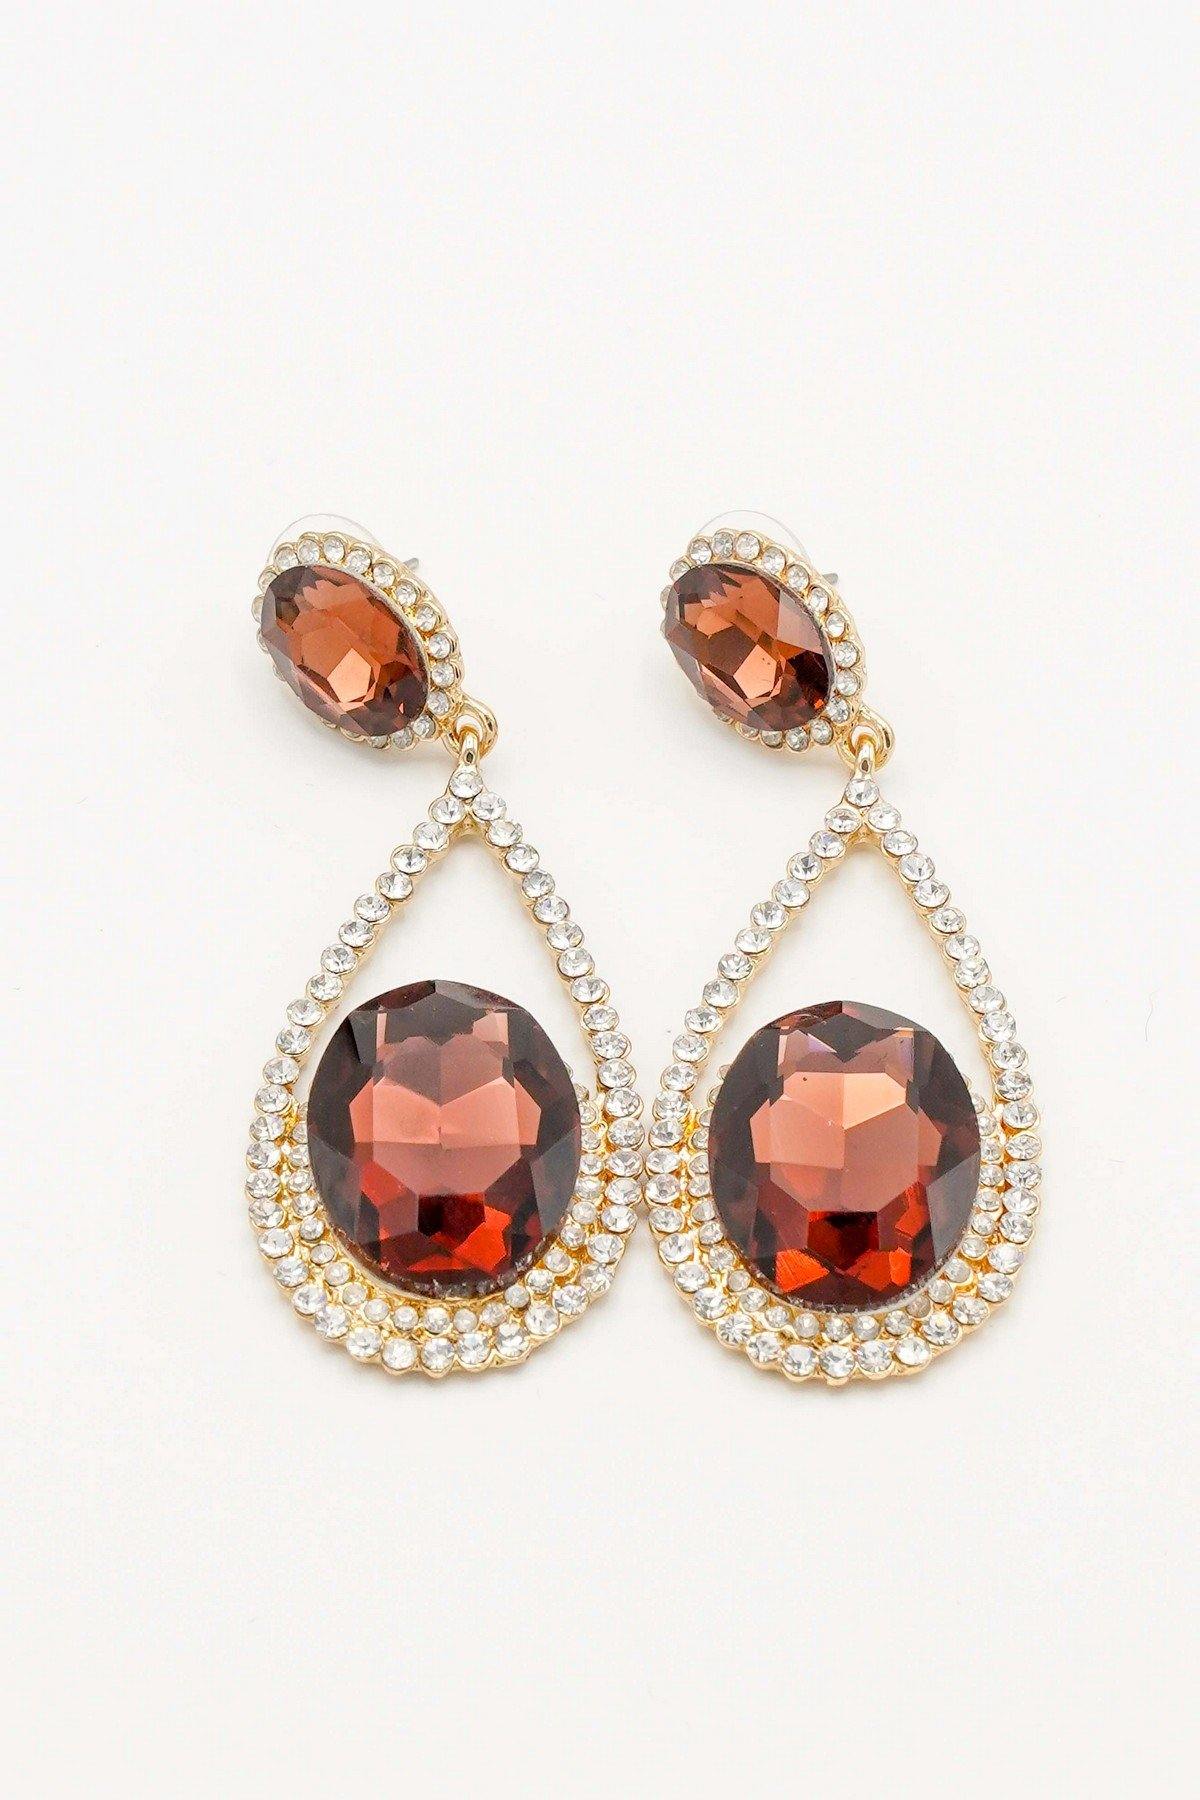 Cluster Teardrop Rhinestone Clear Diamante Earrings - The Dress Outlet